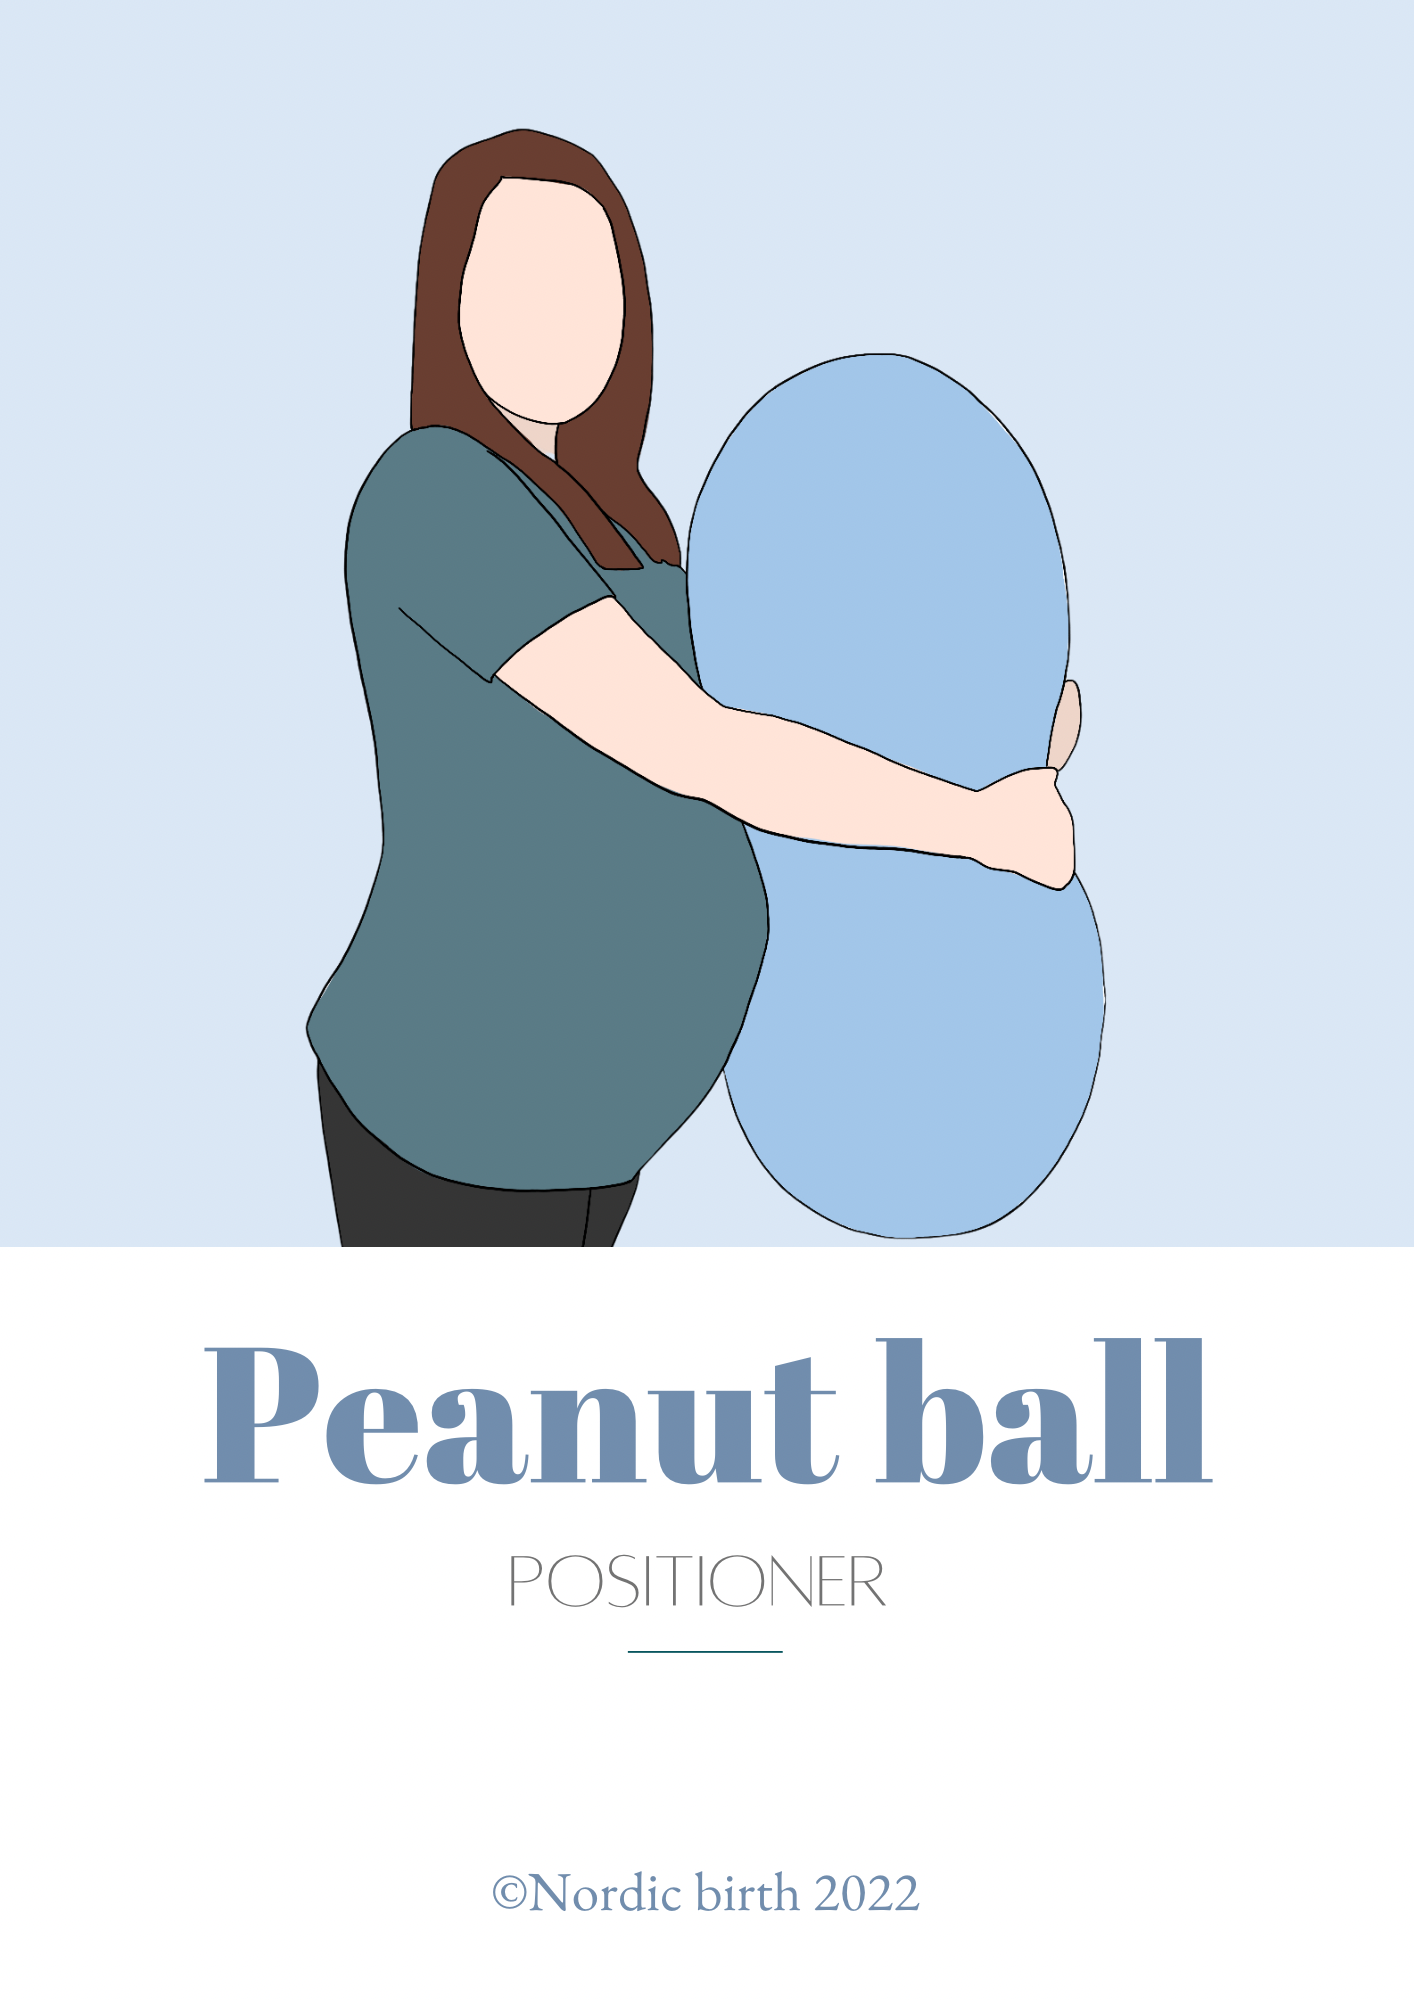 Peanut ball positioner